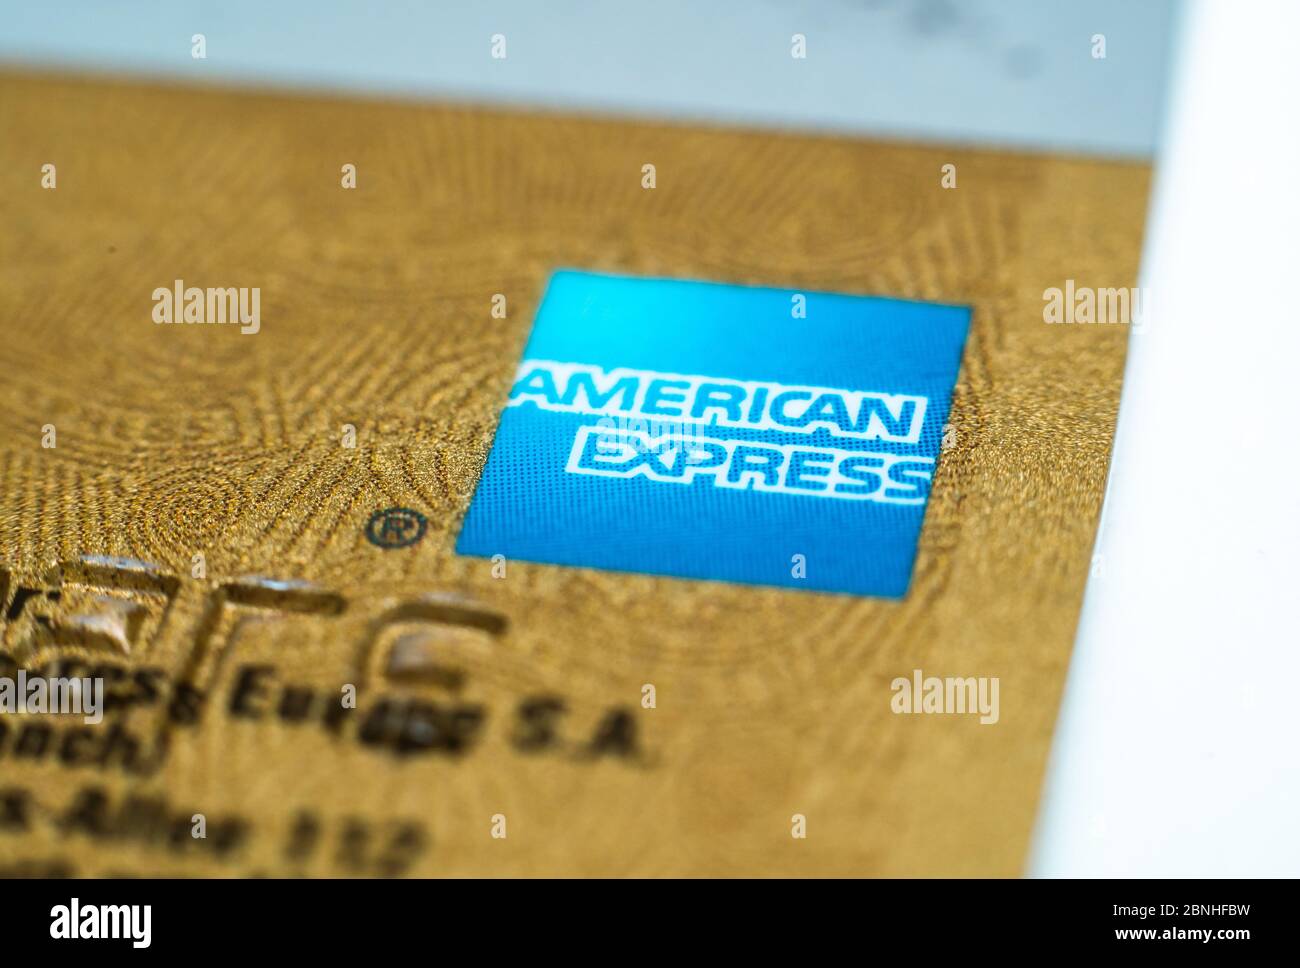 MONACO di BAVIERA, GERMANIA - 29 aprile 2020: Closeup di una carta di credito Amex. Carta oro American Express. La banca segnala i buoni risultati nel commercio della carta di credito. Foto Stock